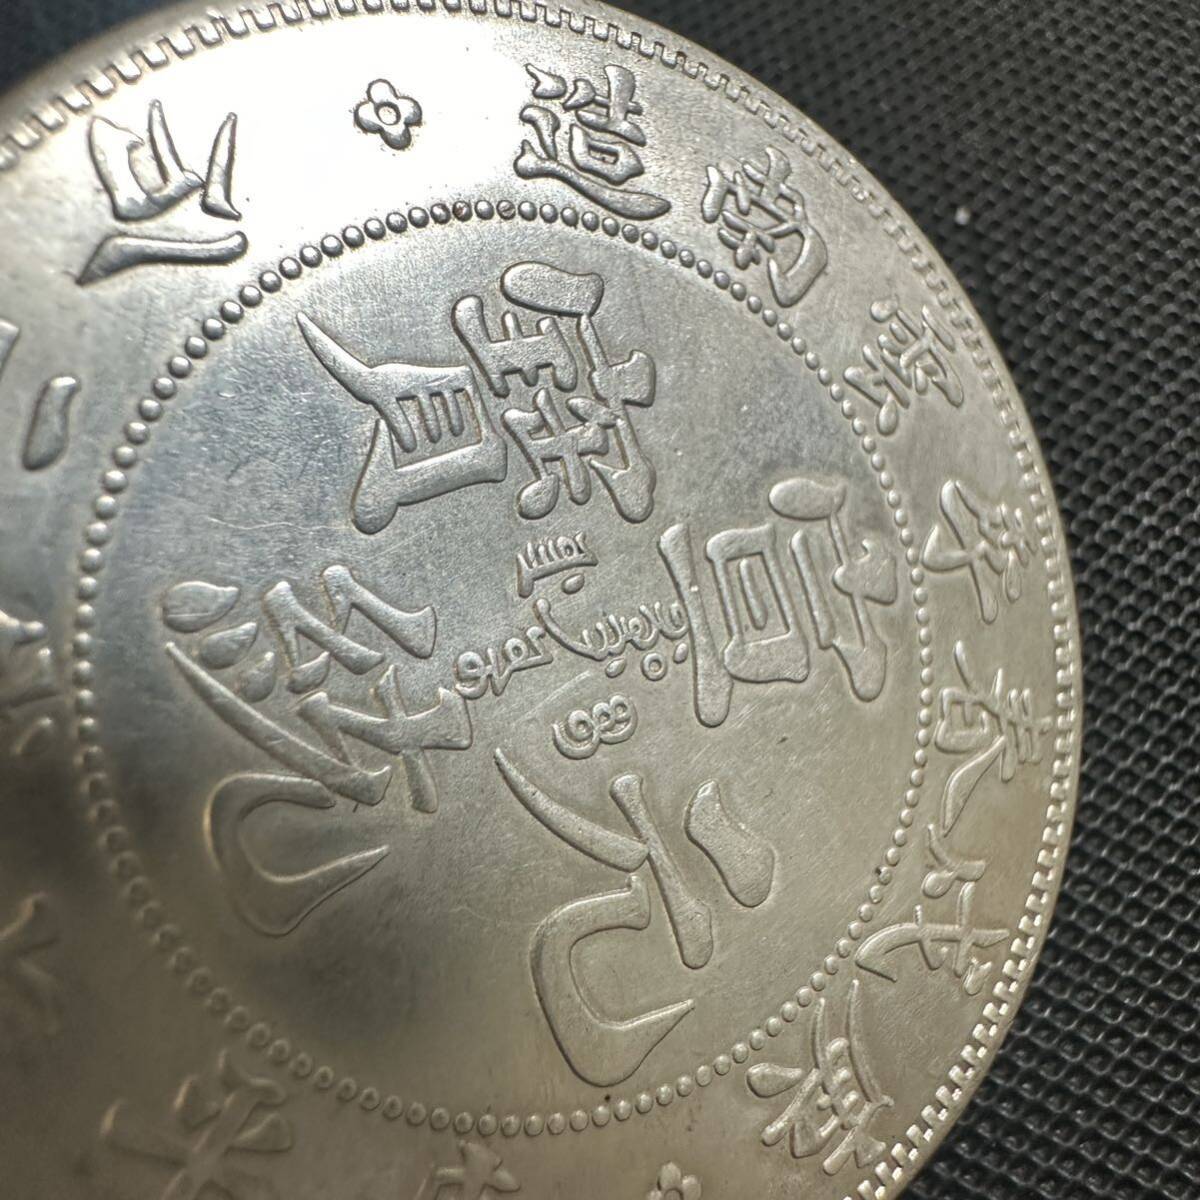 ... красивая вещь 　 Тюгоку 　 большой ...　 свет ...　  серебро ...　... исключать  ...　...7 [мелкие] деньги ...　 серебряная монета  　 большой размер  монета 　 монета 　SV3  вес 28.3g